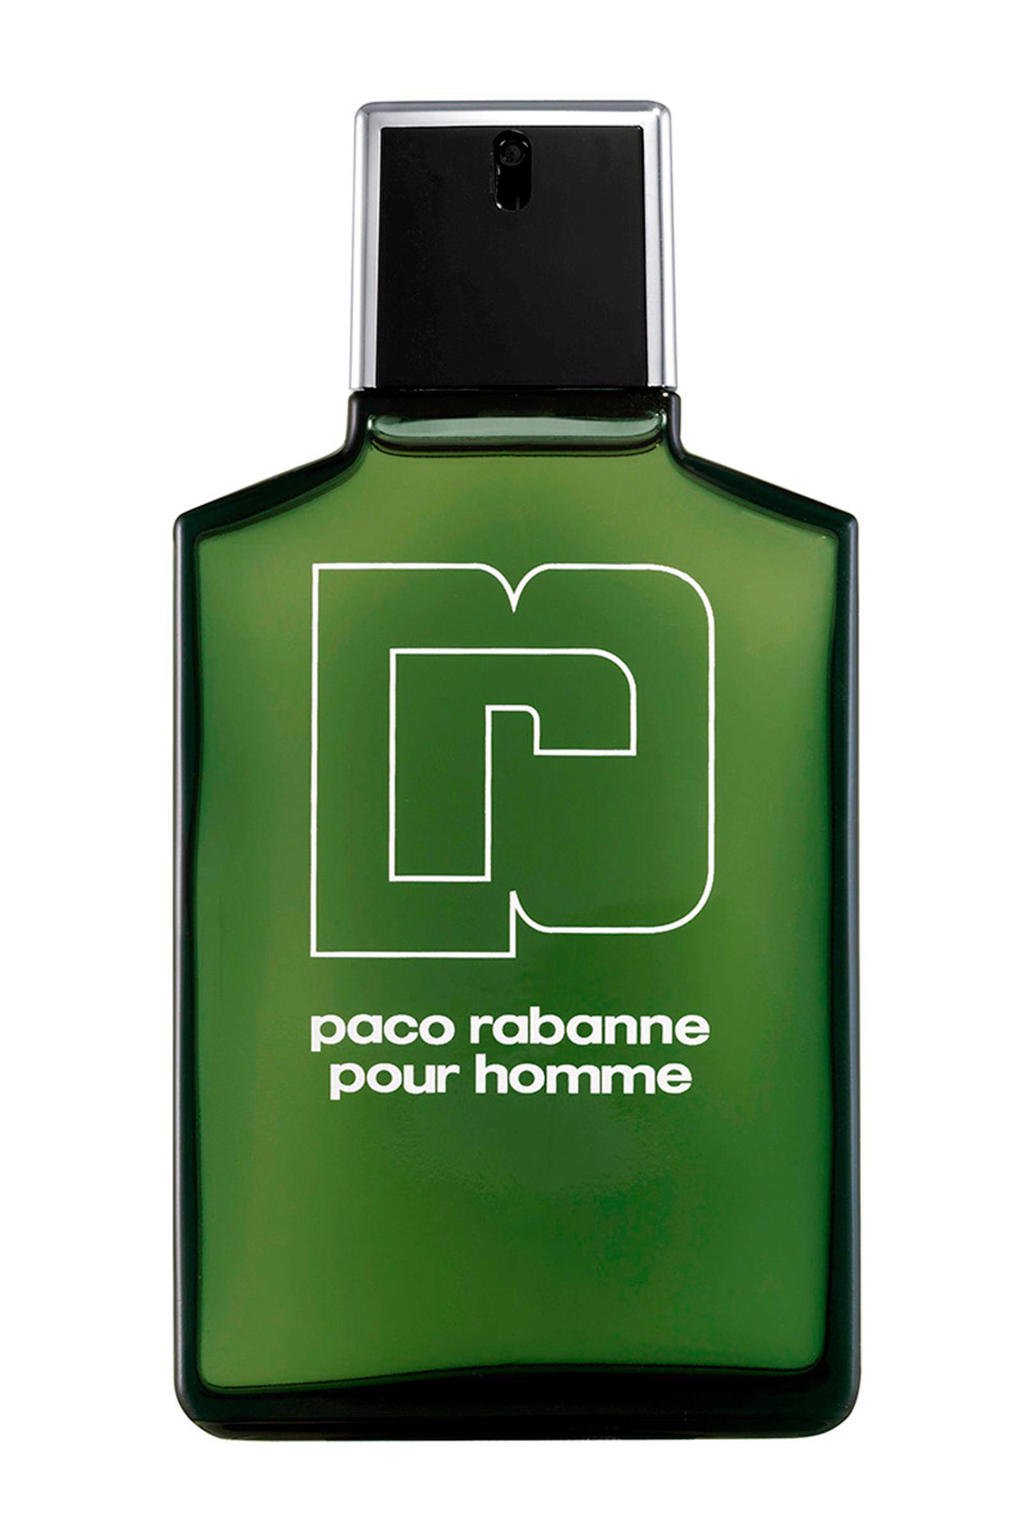 Paco Rabanne Pour Homme eau de toilette - 100 ml